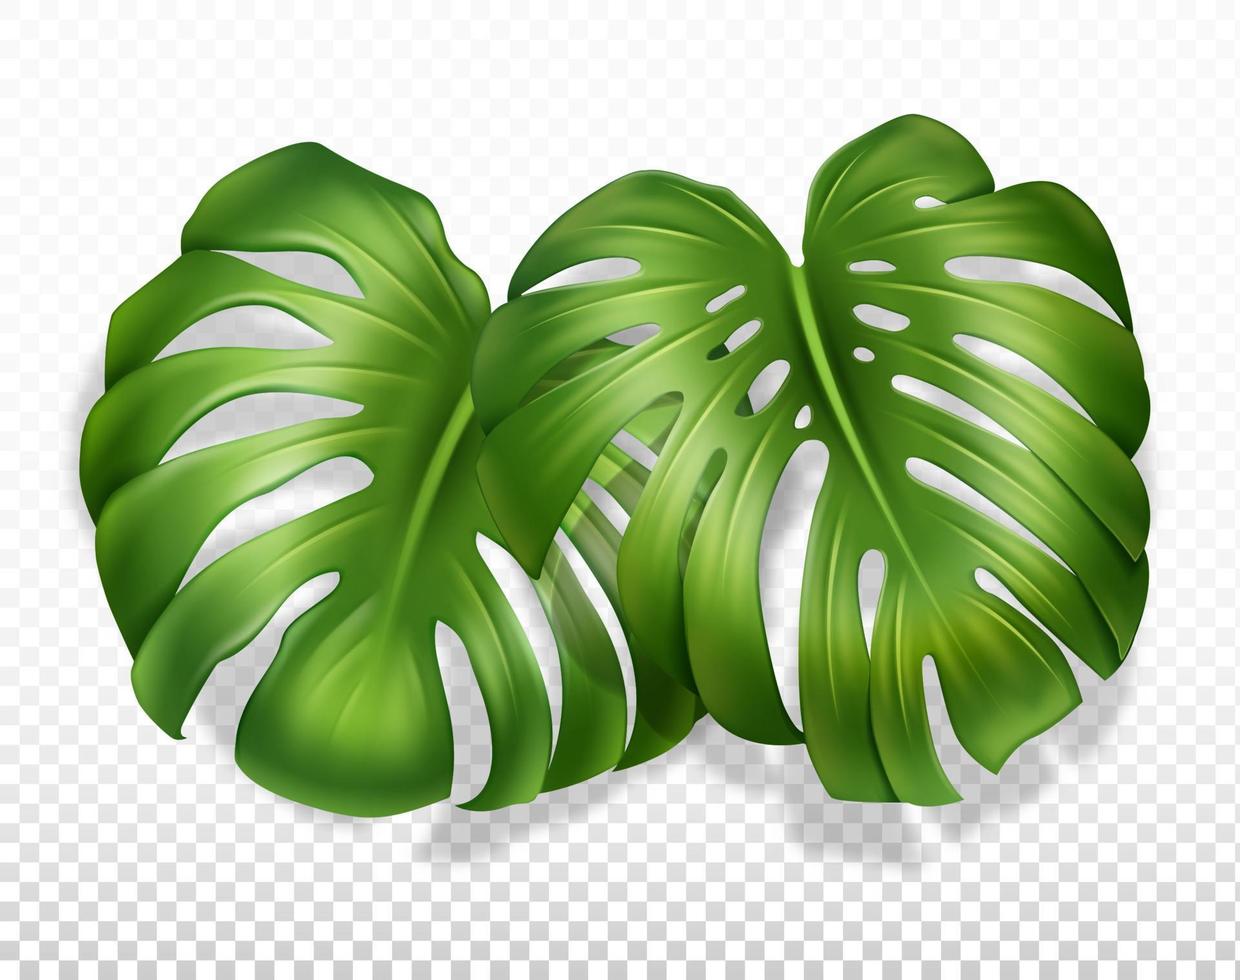 deux grandes feuilles de monstera avec une pousse. gros plan, illustration réaliste. isolé sur un fond transparent. vecteur. vecteur